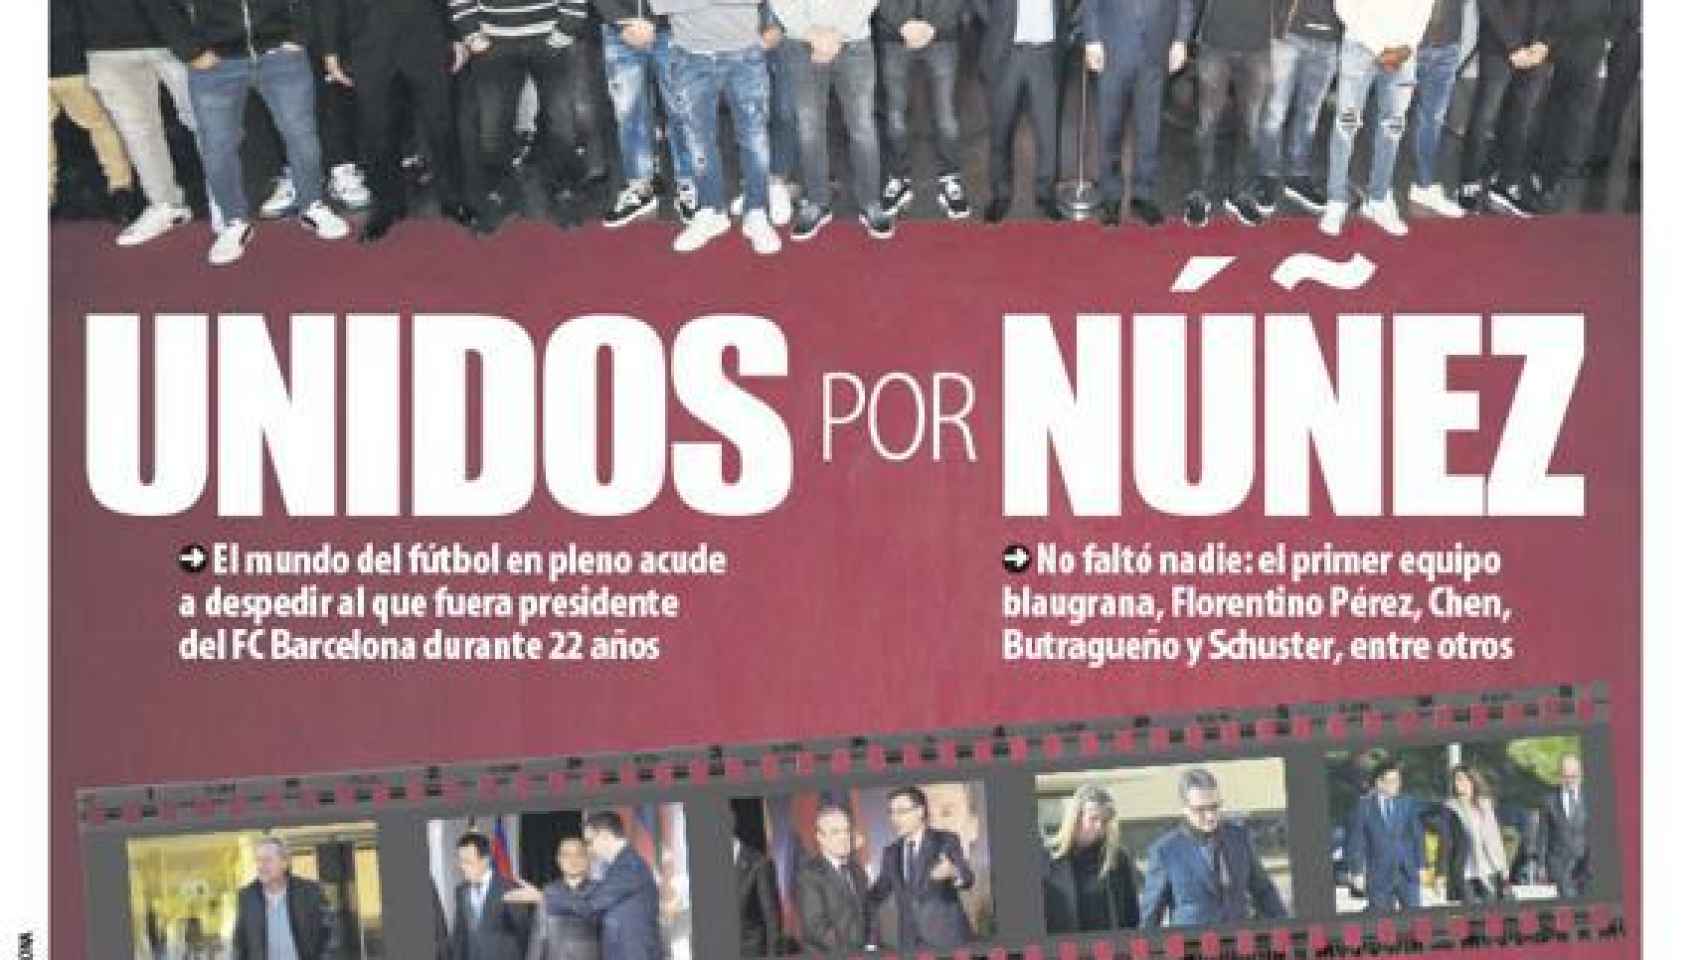 Portada Mundo Deportivo (05/12/18)